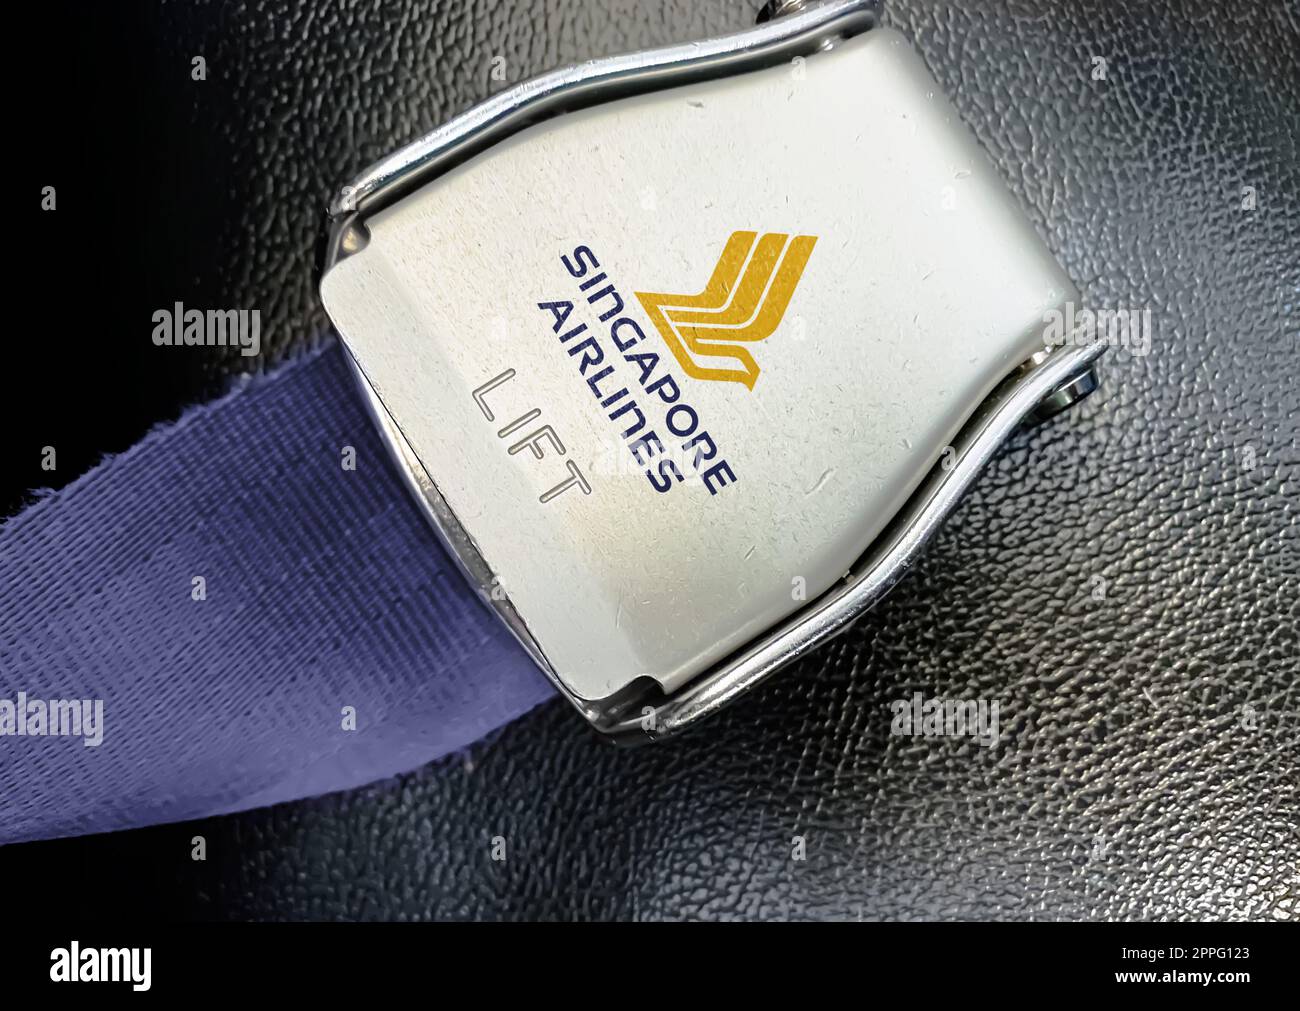 Détail de la boucle de la ceinture de sécurité avec le logo de Singapore Airlines sur un siège vide Banque D'Images